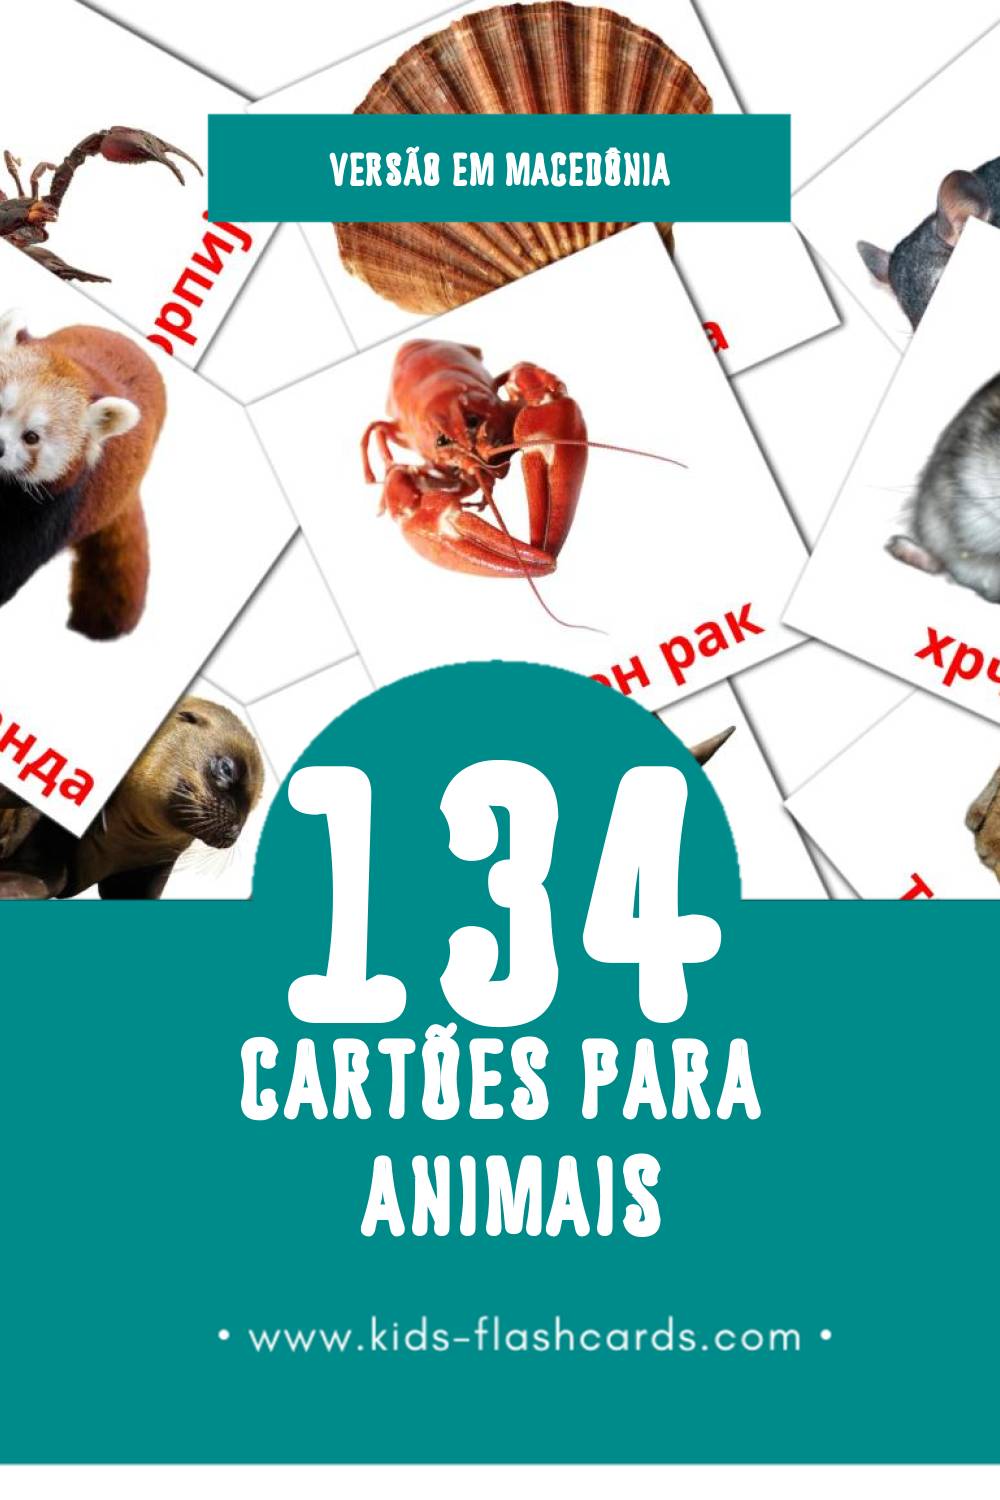 Flashcards de Животни Visuais para Toddlers (134 cartões em Macedônia)